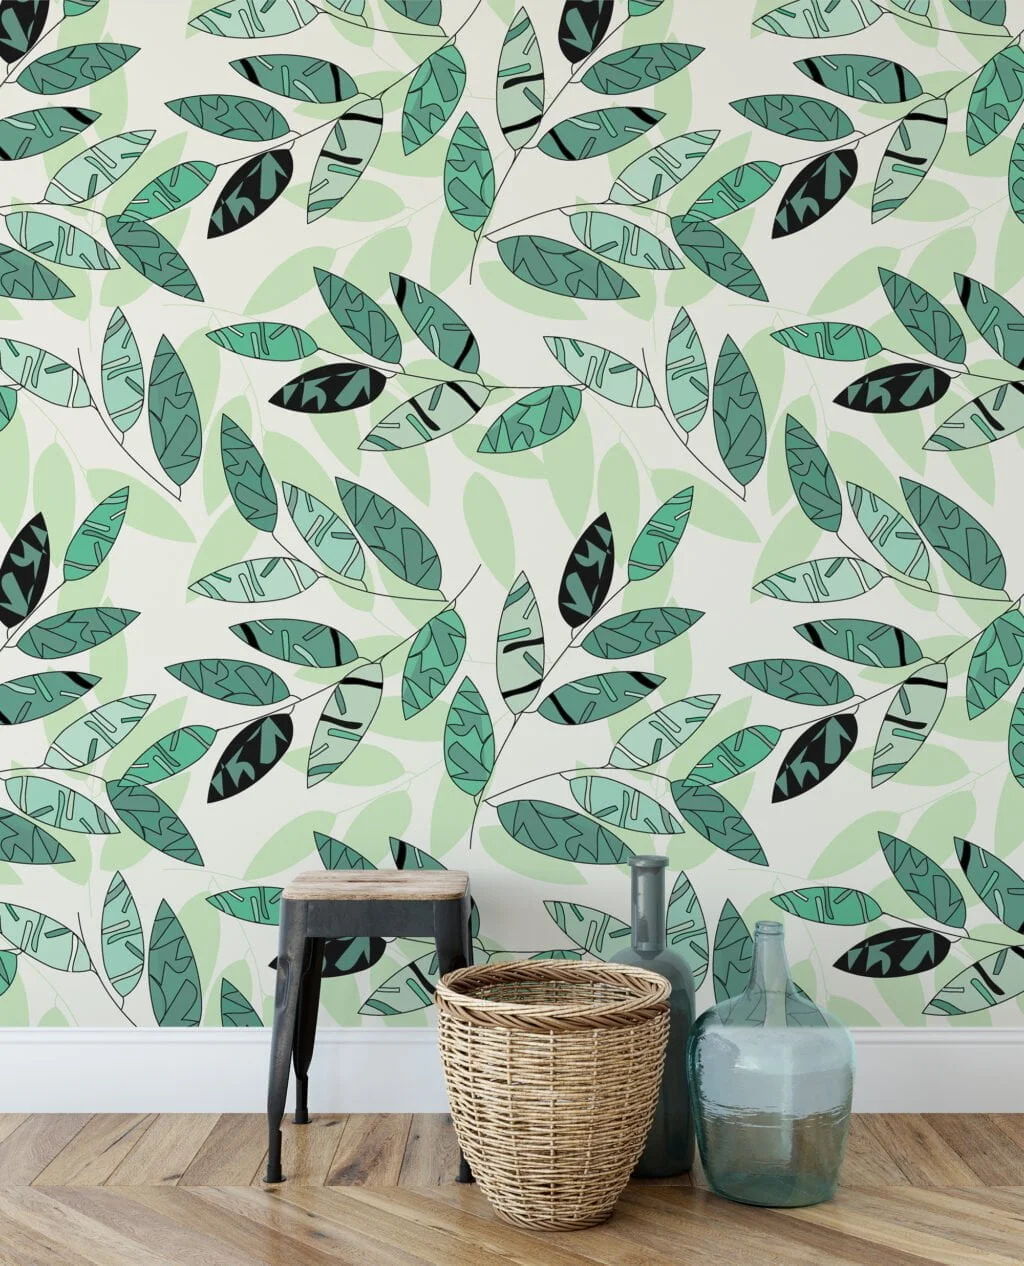 Soyut Yeşil Yapraklar Duvar Kağıdı, Taze Yeşil Botanik Tasarım 3D Duvar Posteri Yaprak Desenli Duvar Kağıtları 6